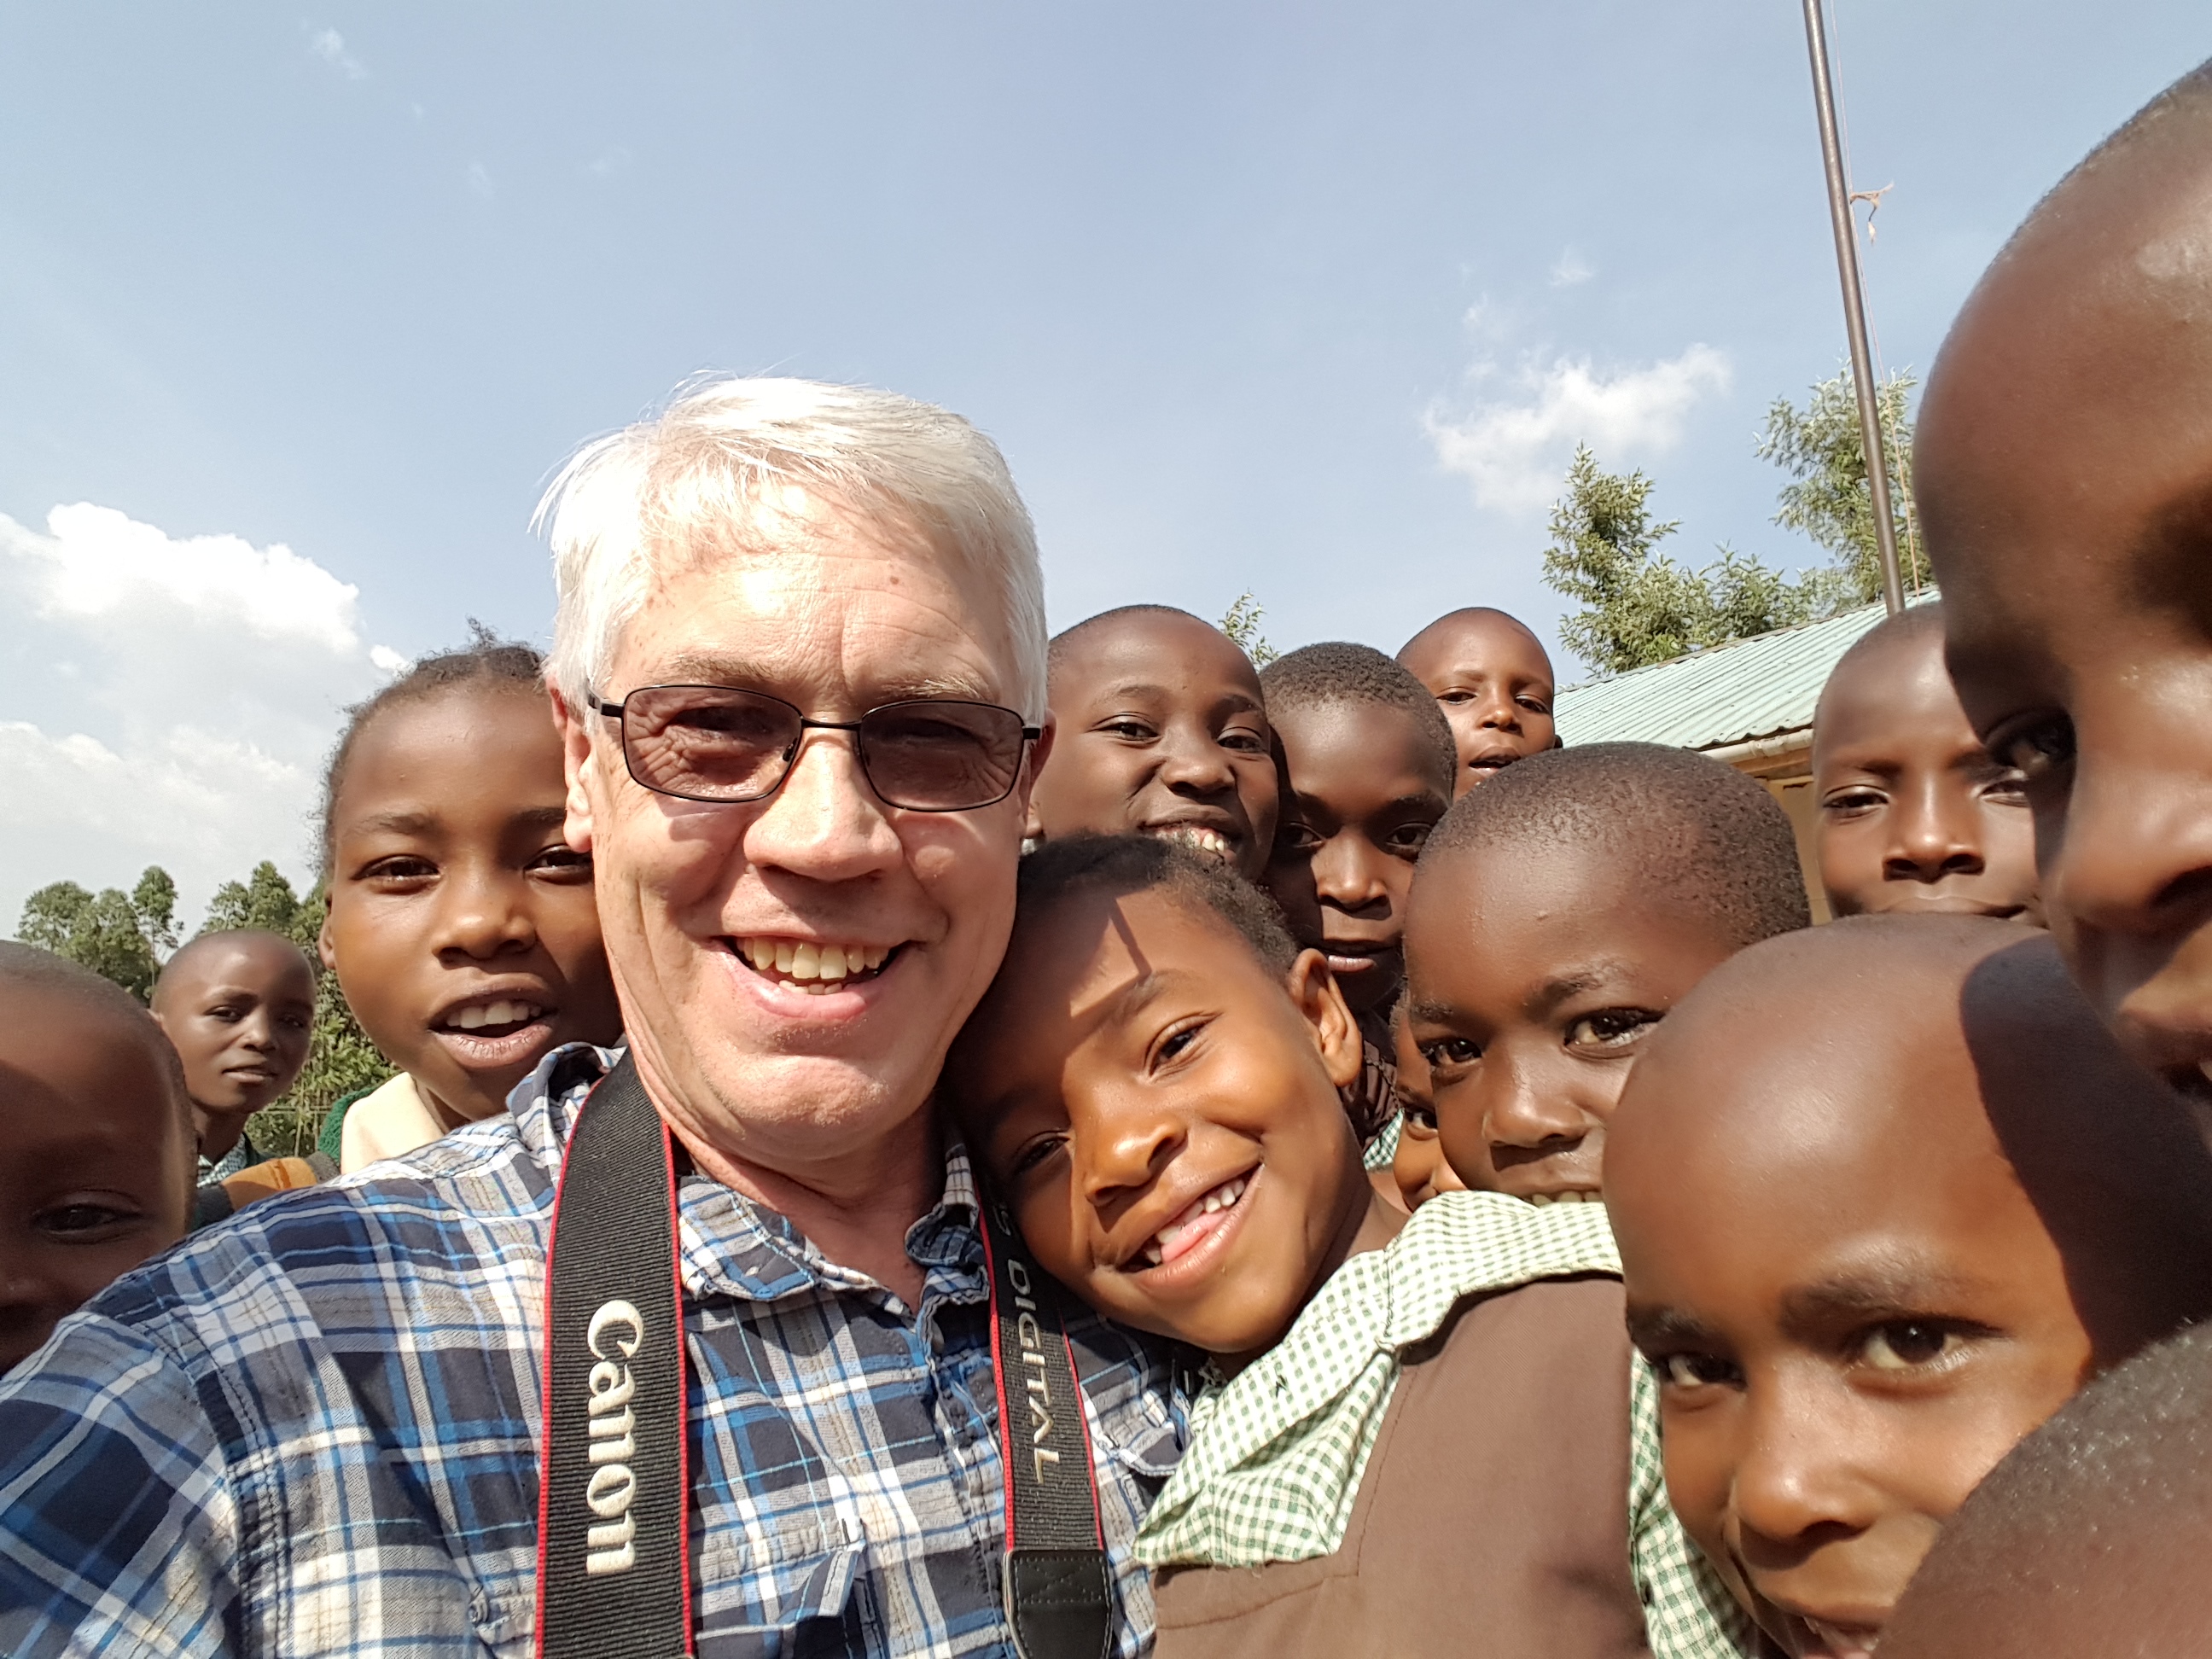 dan haskins with kids in kenya